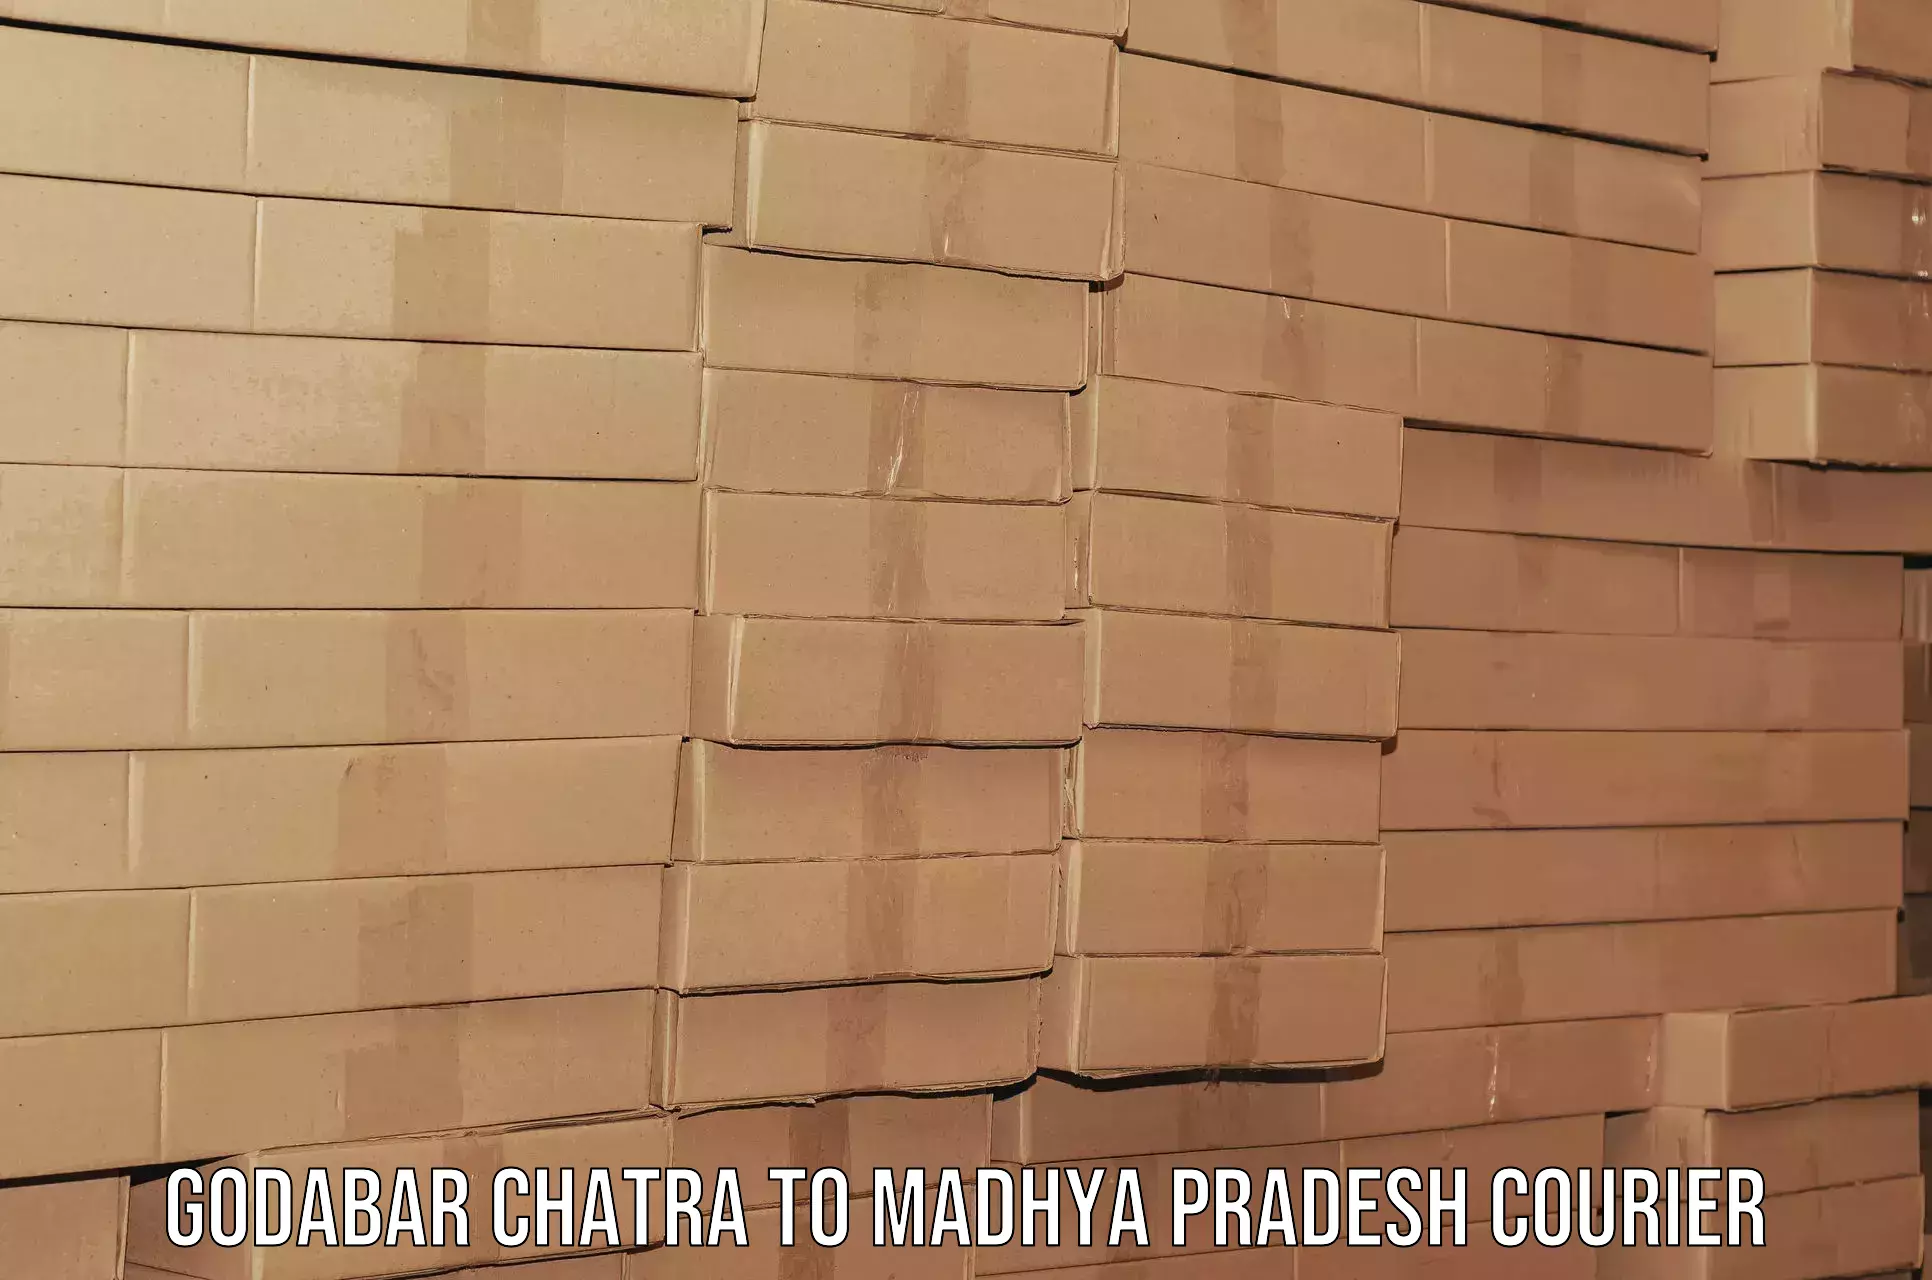 Budget-friendly movers Godabar Chatra to Satna